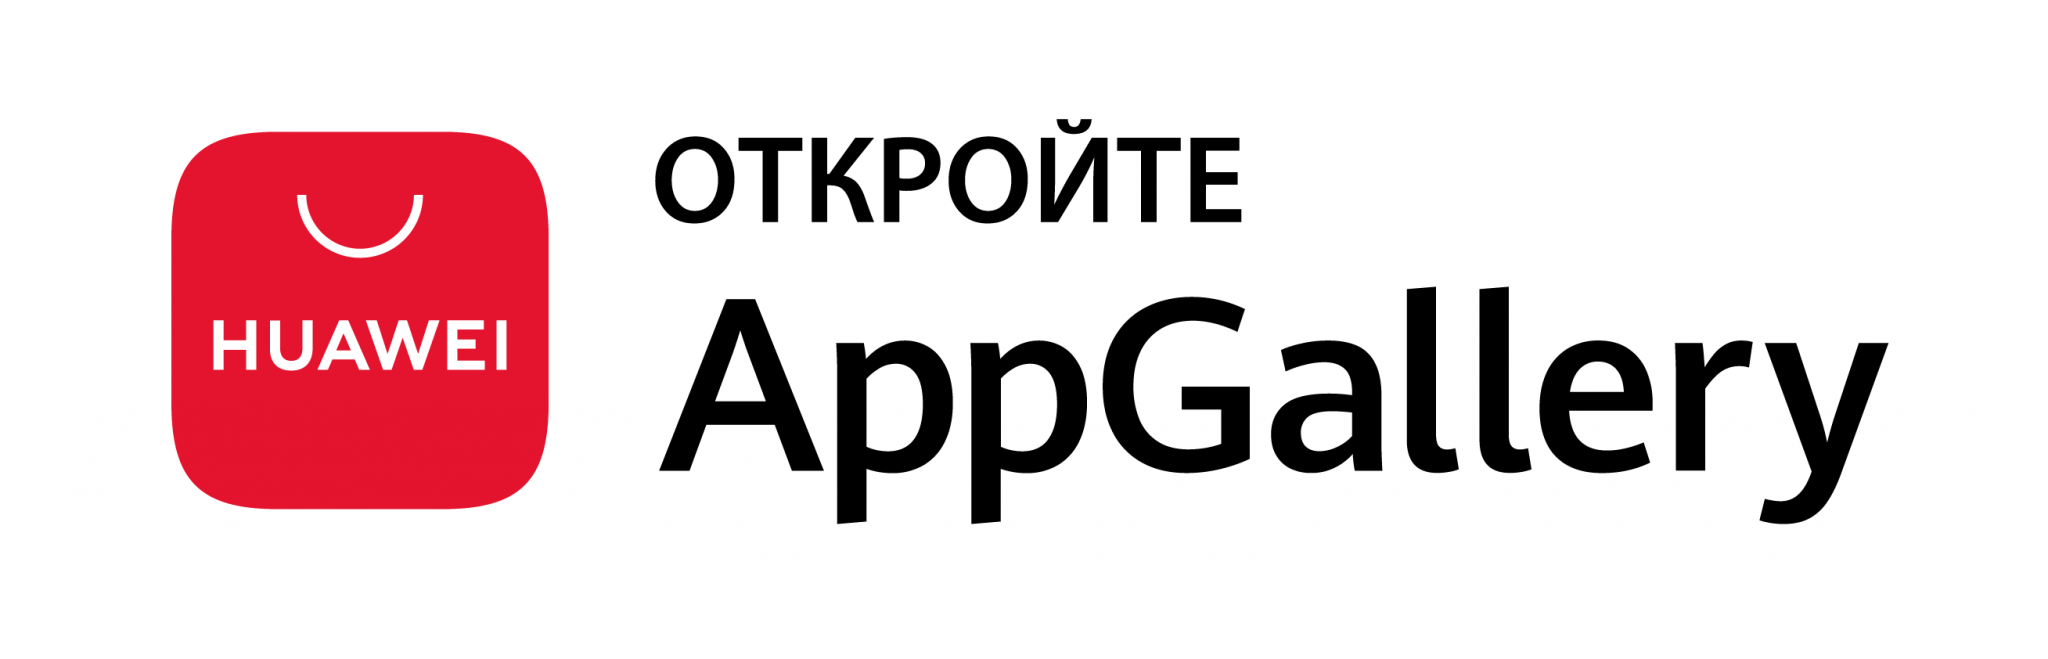 Покупки в app gallery. Доступно в app Gallery. App Gallery логотип. Откройте в app Gallery logo. Магазин приложений Huawei APPGALLERY.